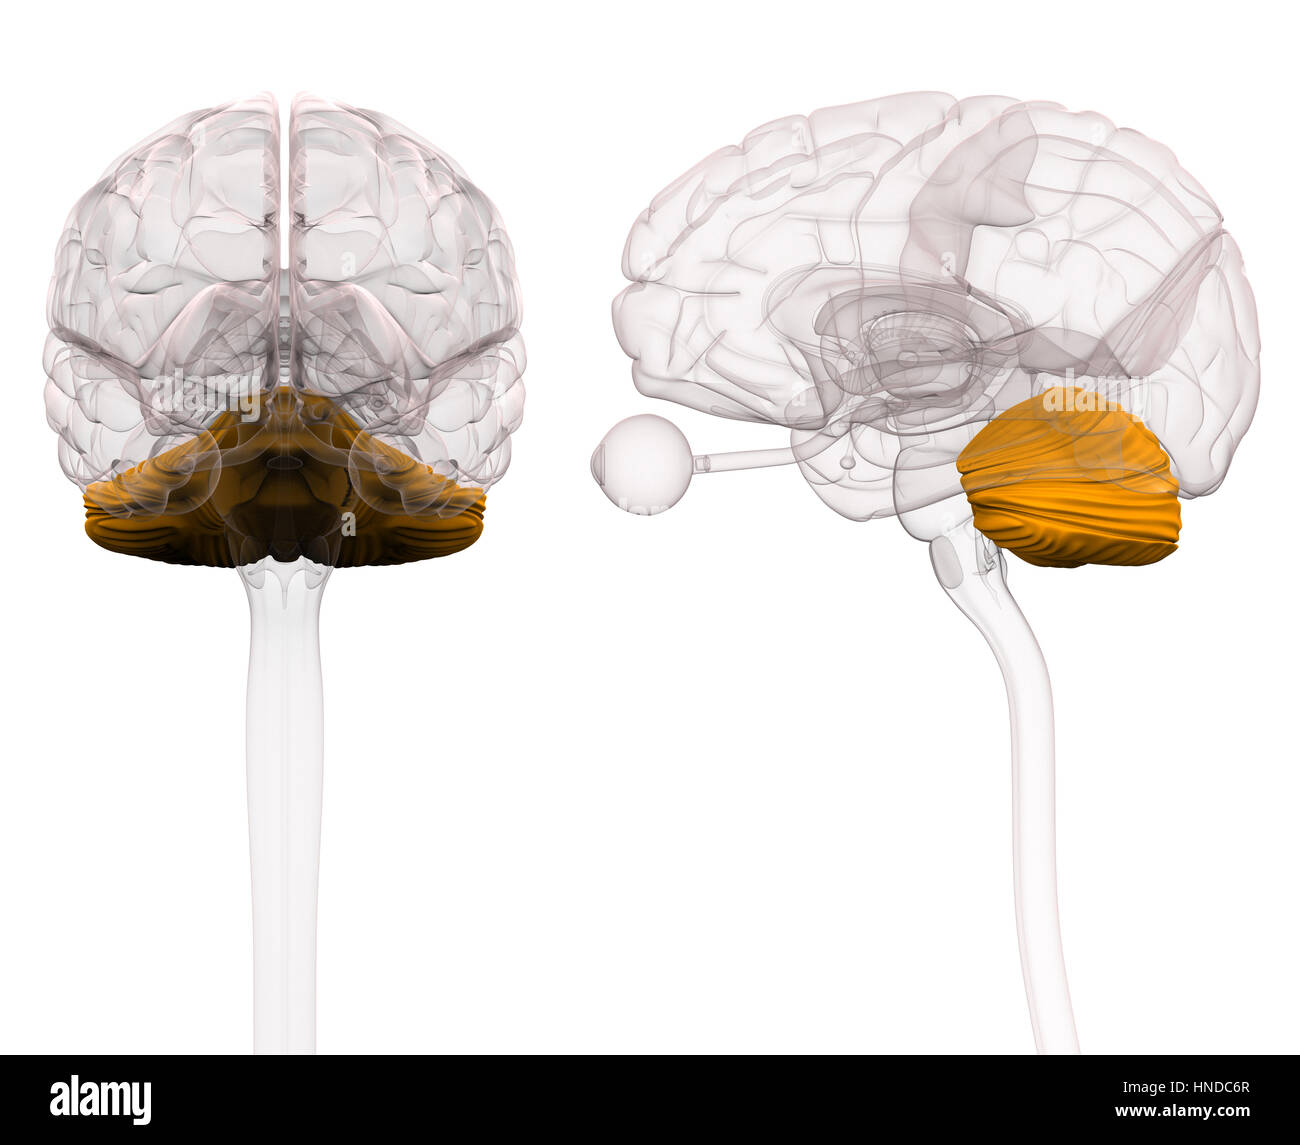 L'anatomie du cerveau cervelet - 3d illustration Banque D'Images